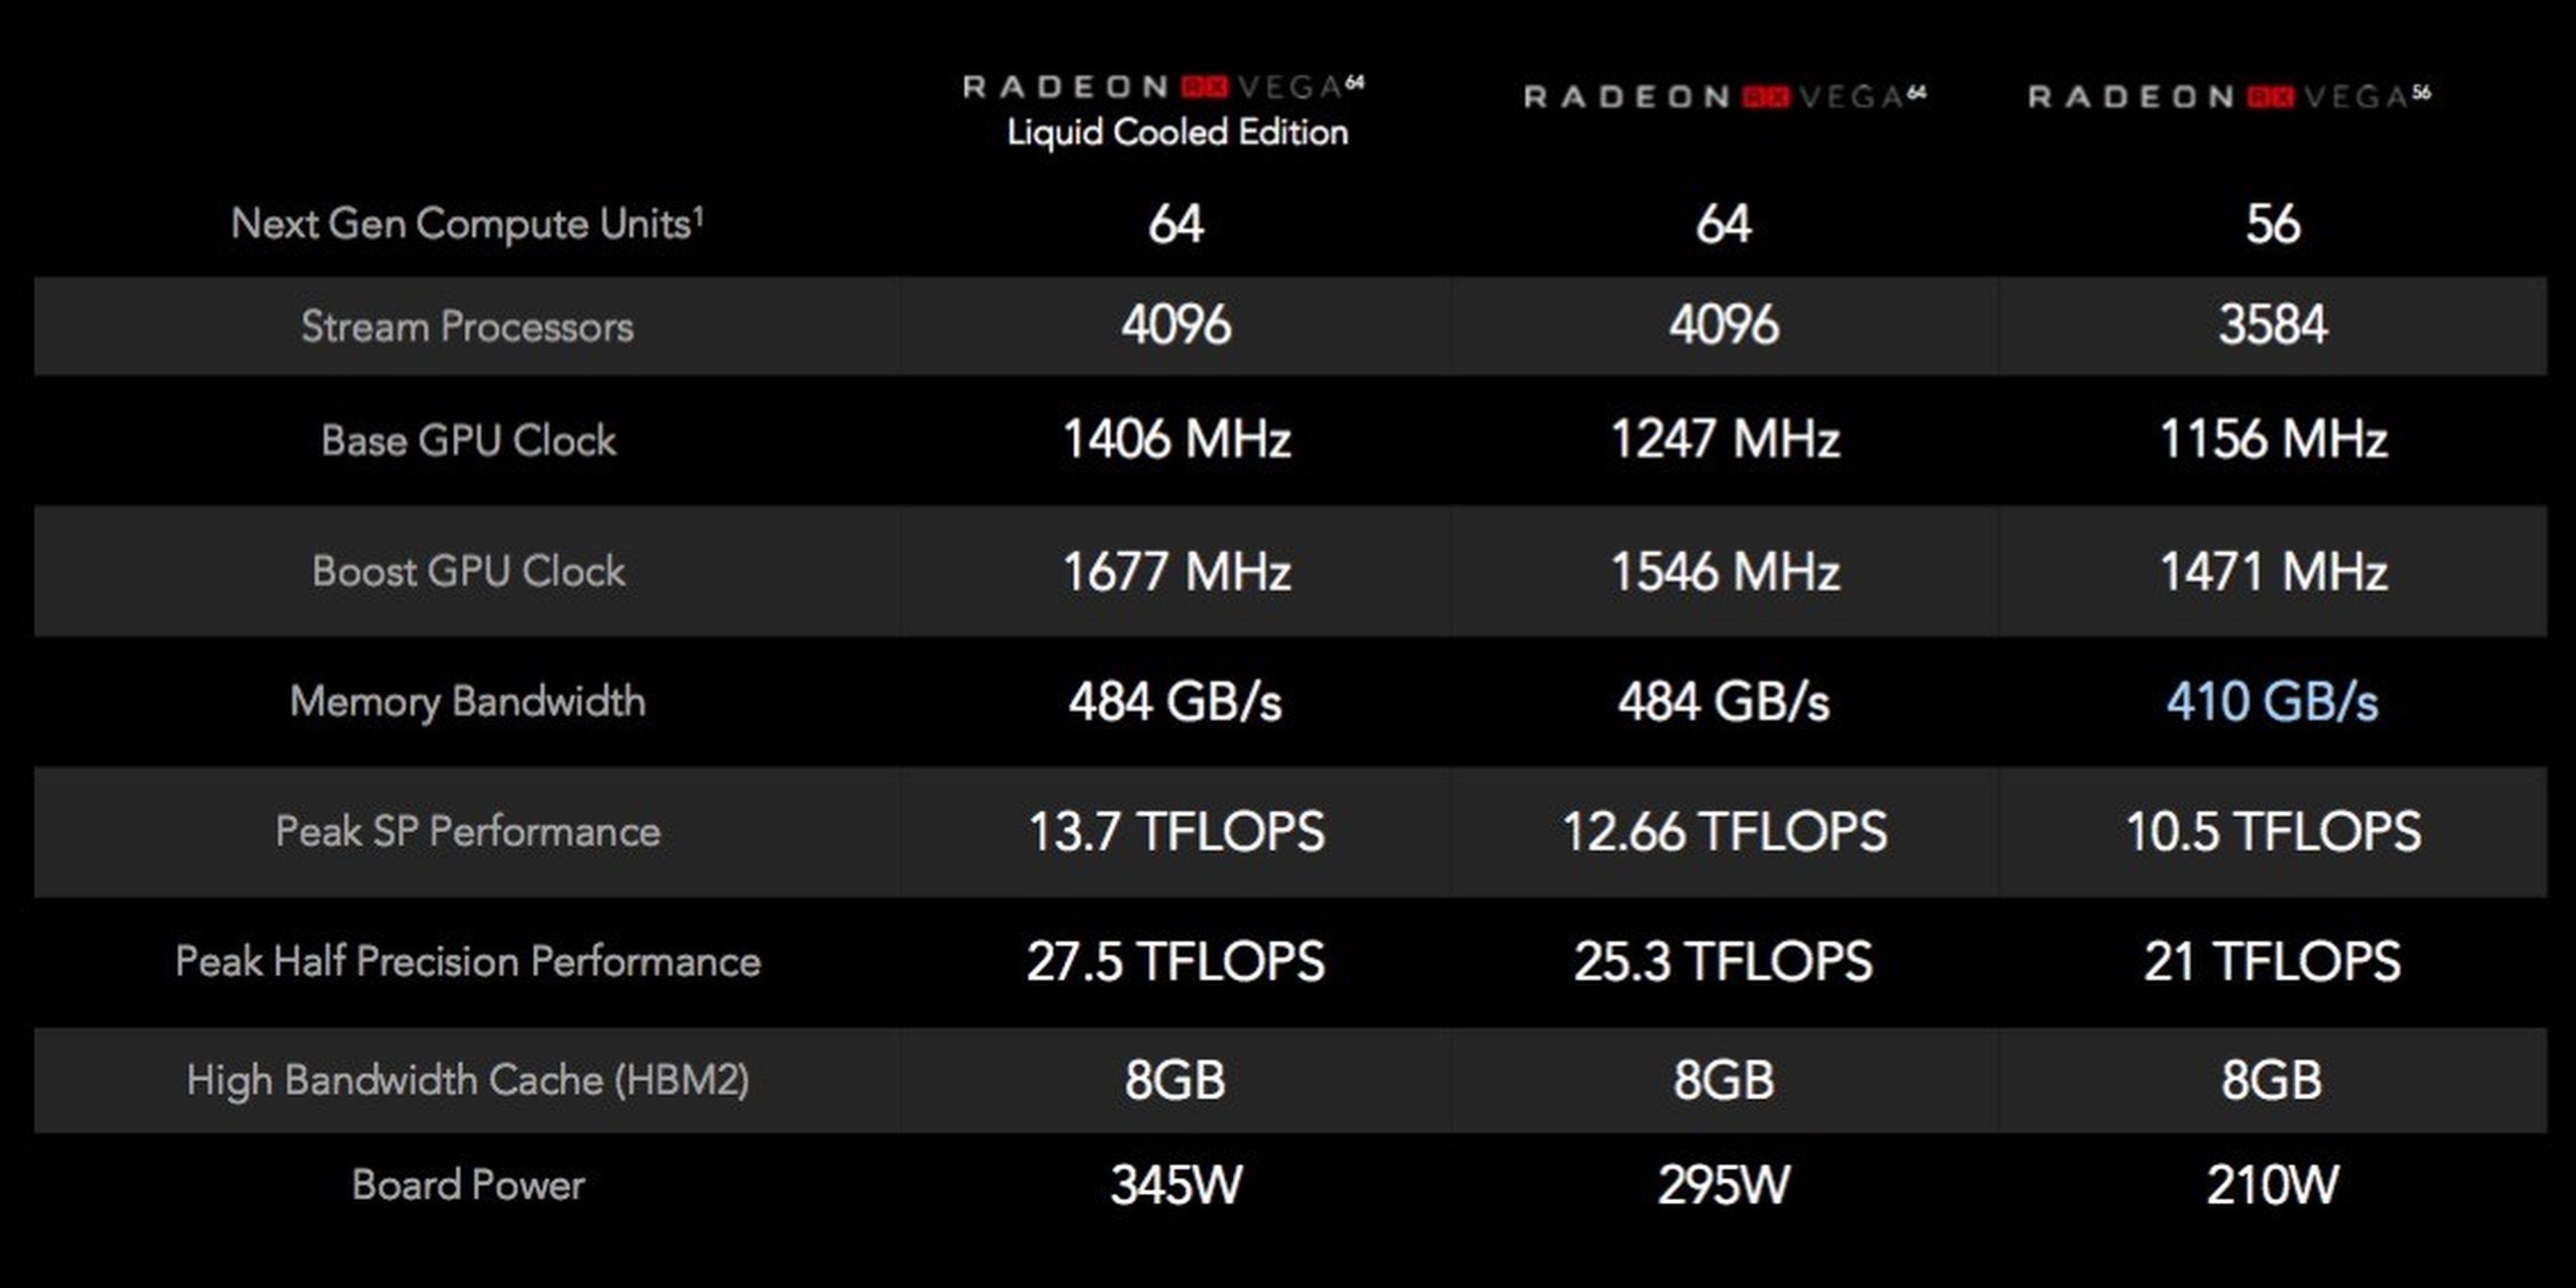 Tabla de rendimiento de las diferentes AMD Radeon RX Vega